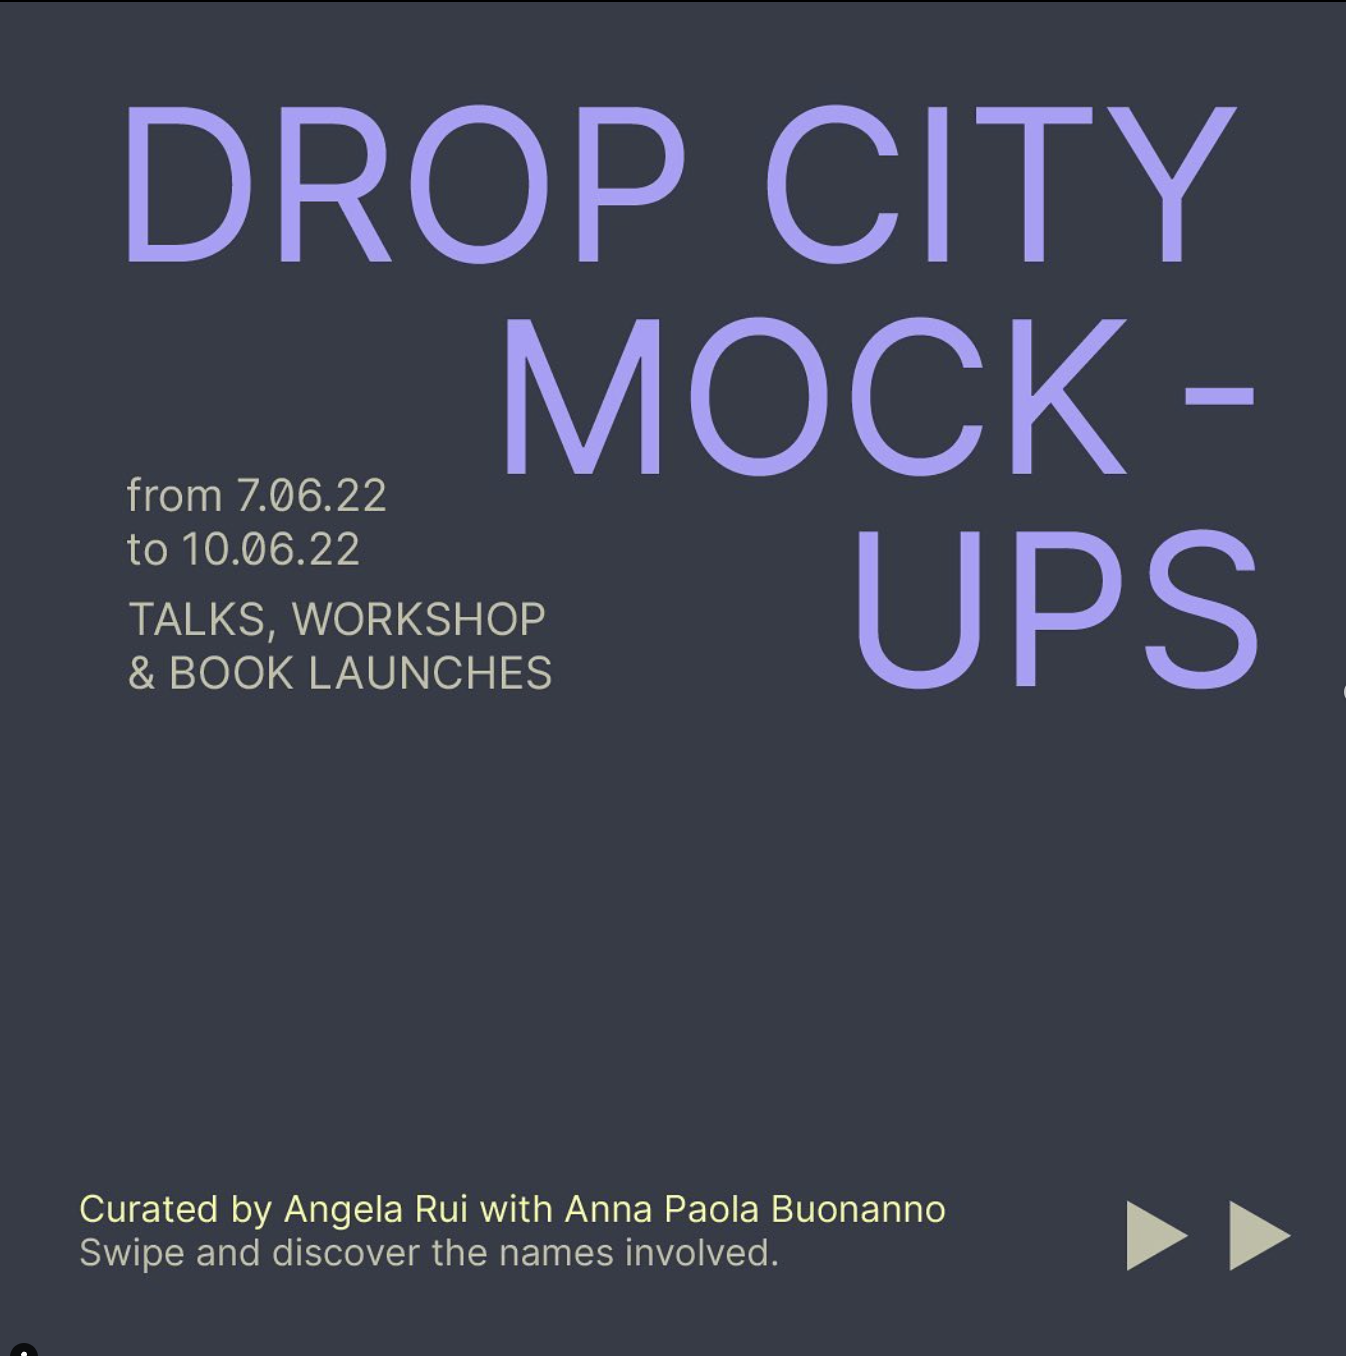 Drop City Mockups**[Drop City, Milano]